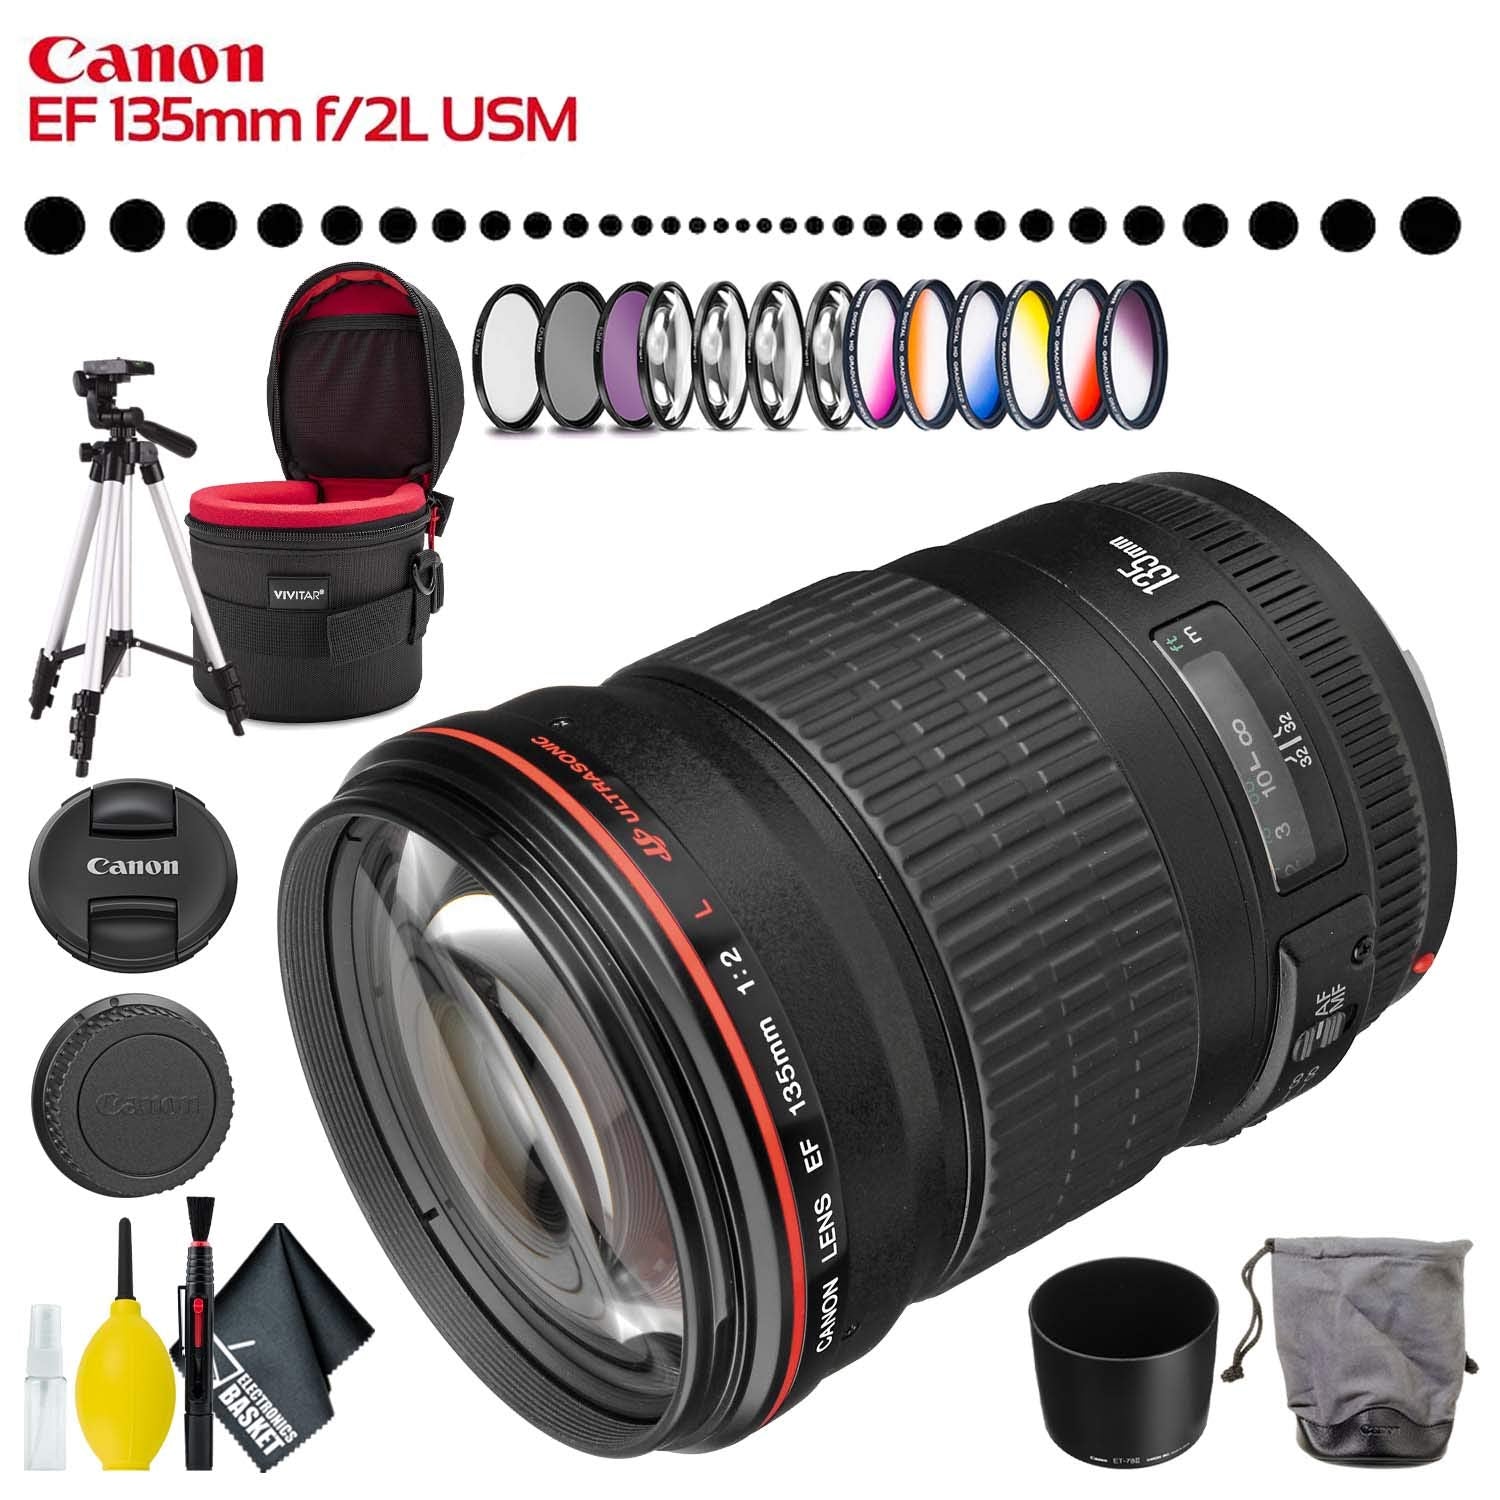 Canon EF 135mm f/2L USM Lens (Intl Model) with Filter Kit, Lens Case,